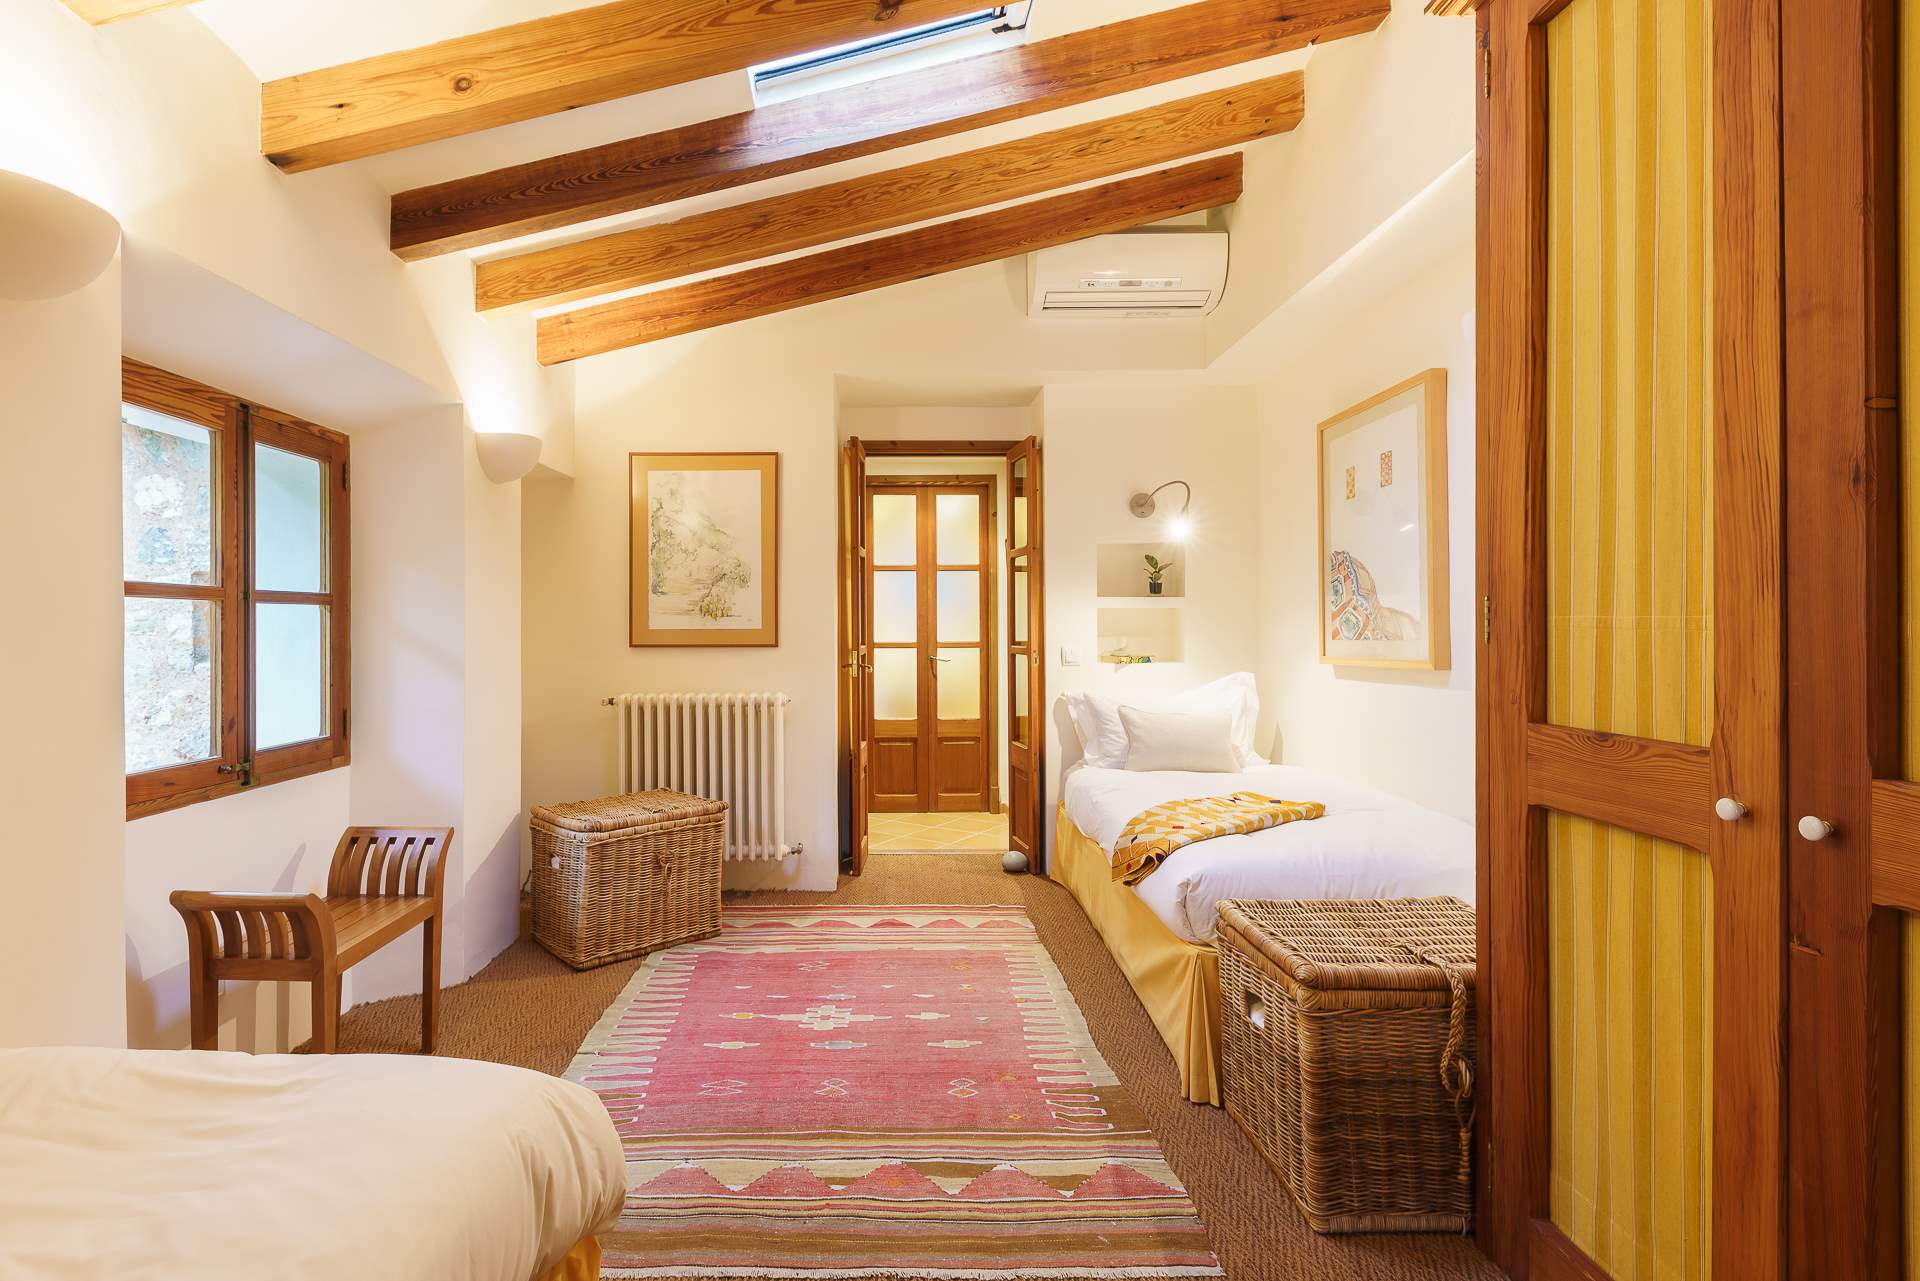 Sa Tanca, 3 Bedroom Rental, 3 bedroom villa in Soller & Deia, Majorca Photo #31